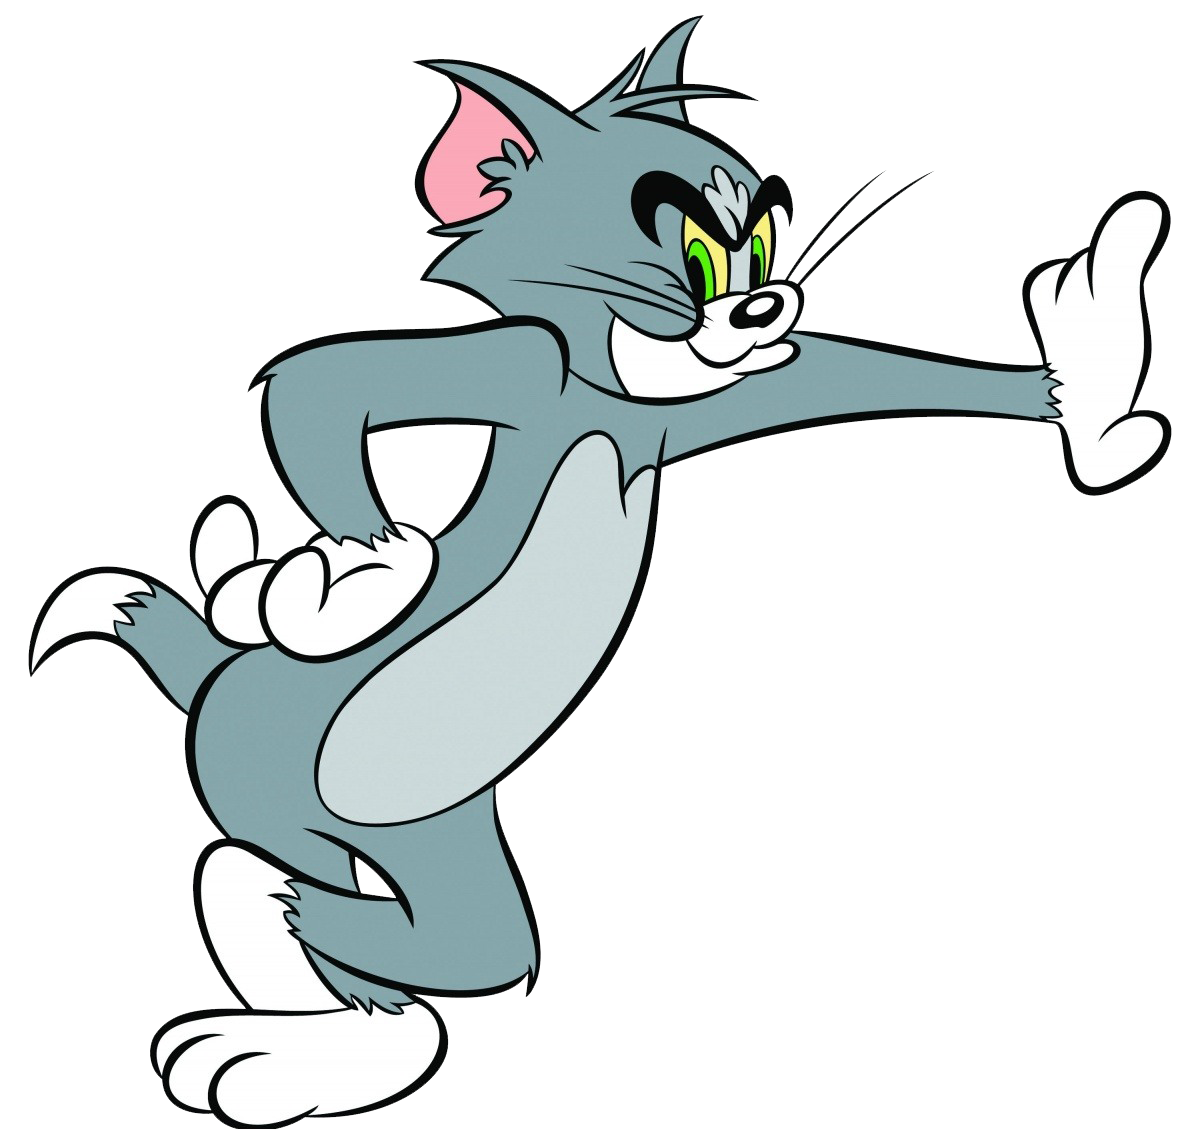 Том и. Кот том и Джерри. Том из мультфильма том и Джерри. Кот том из том и Джерри. Том из мультфильма том и сжкри.